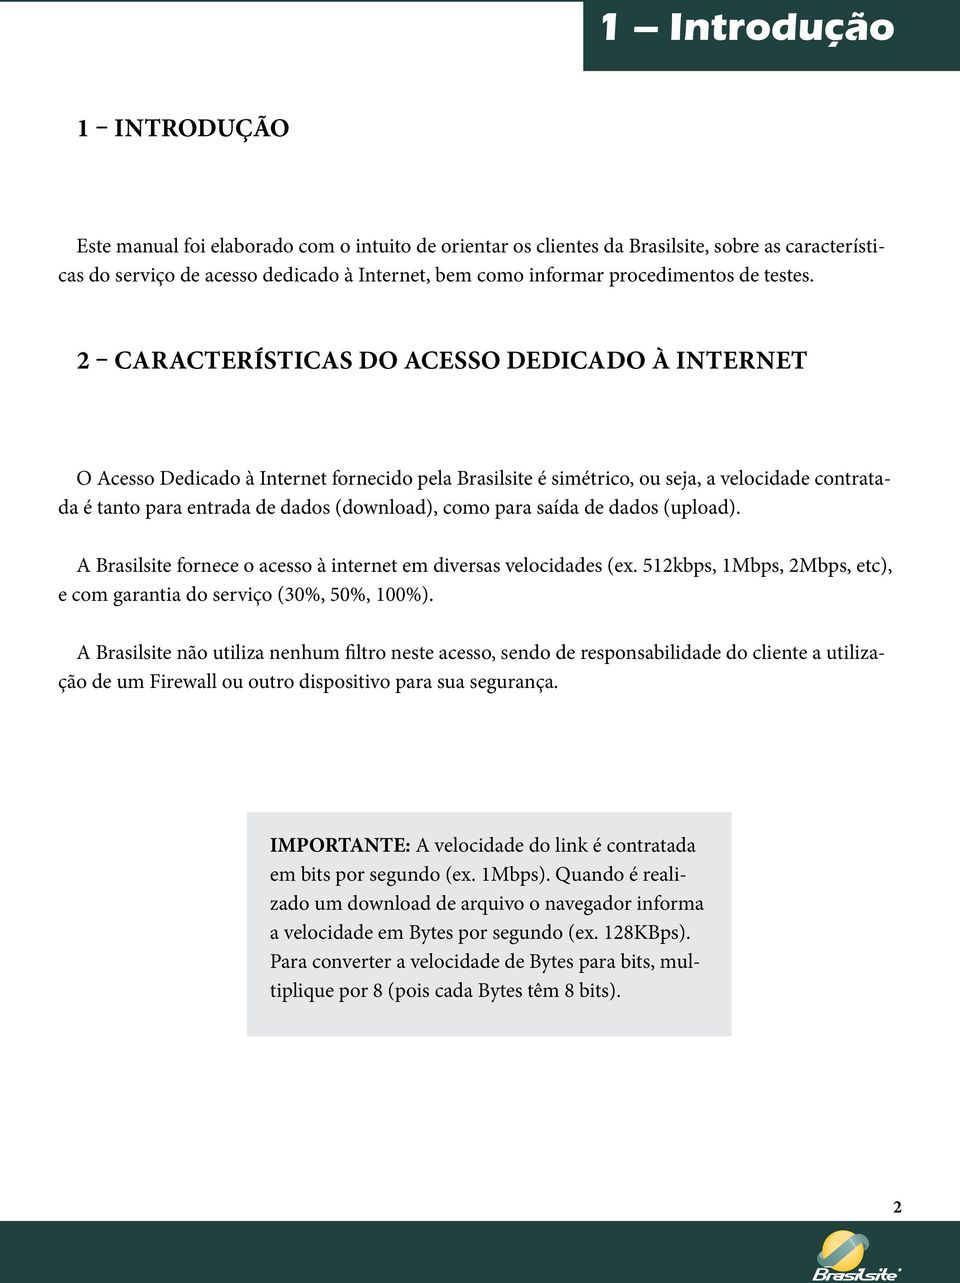 2 Características do Acesso Dedicado à Internet O Acesso Dedicado à Internet fornecido pela Brasilsite é simétrico, ou seja, a velocidade contratada é tanto para entrada de dados (download), como